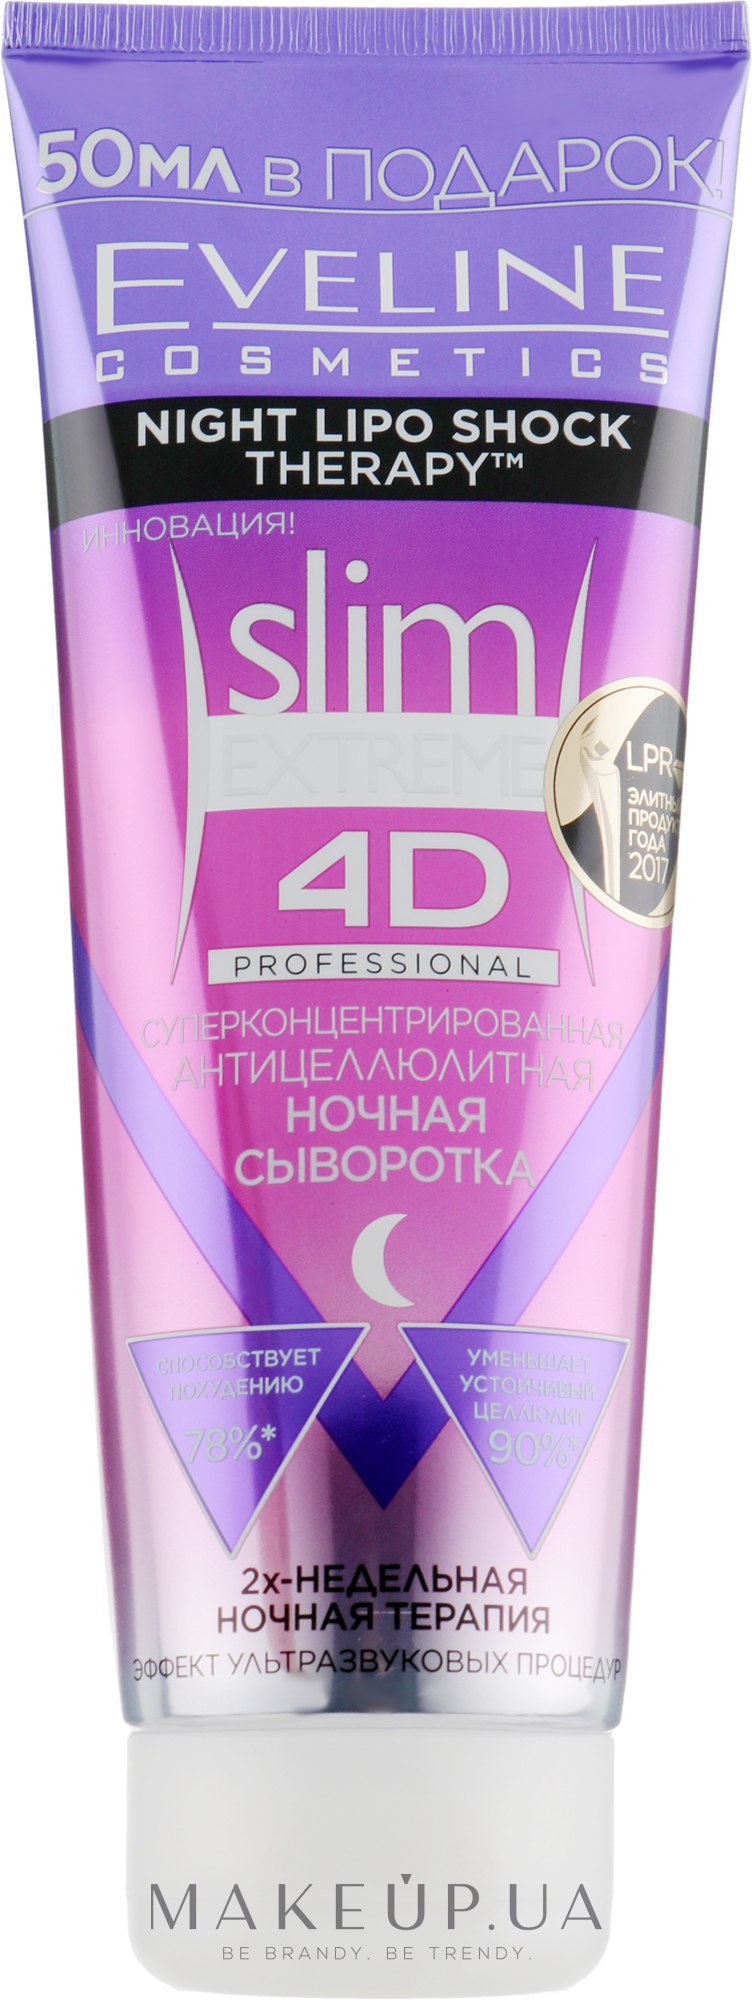 Eveline Cosmetics Slim Extreme 4d Суперконцентрированная антицеллюлитная ночная сыворотка